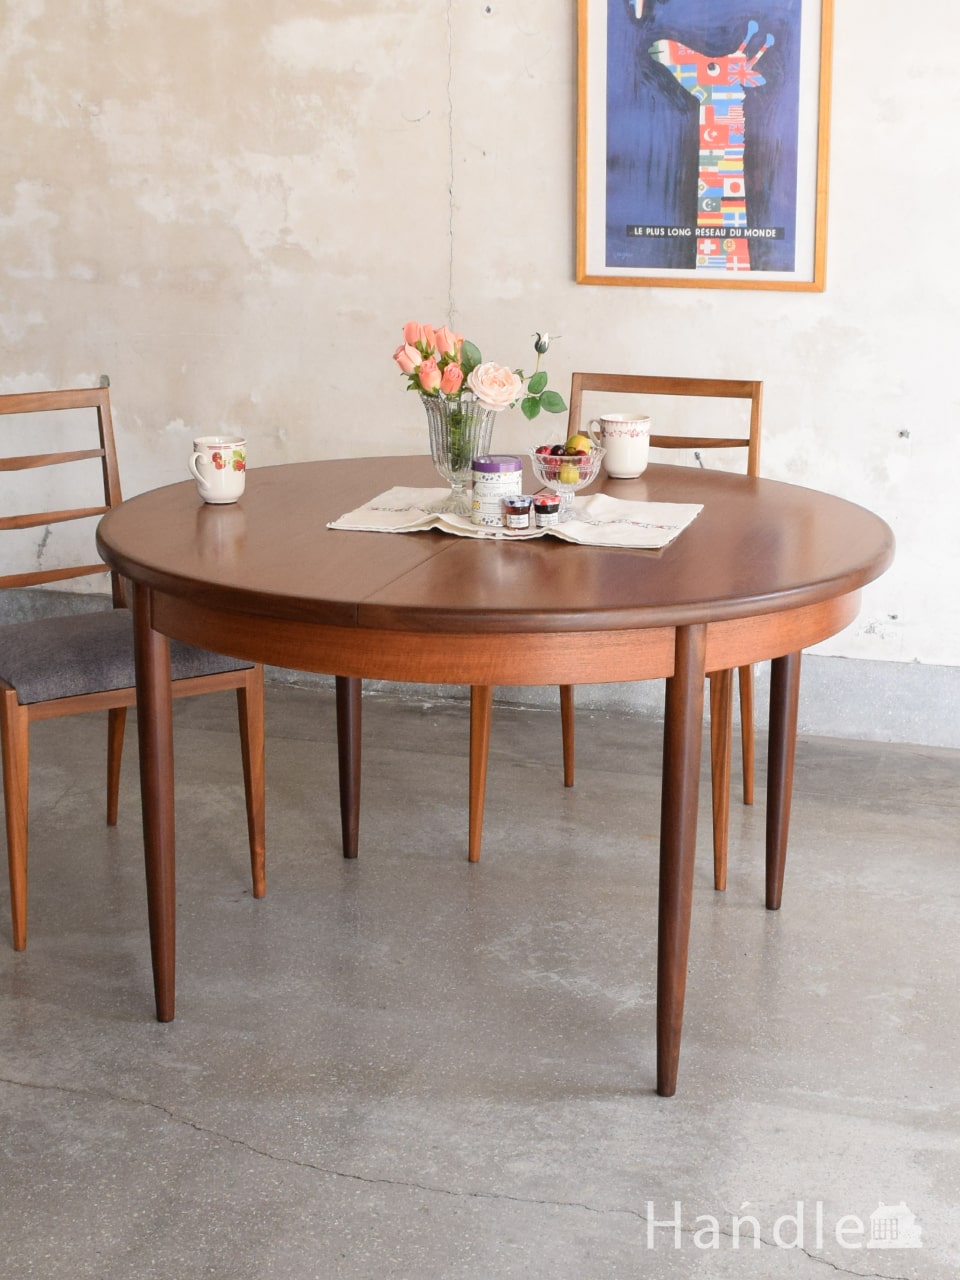 G-PLANのヴィンテージテーブル、北欧スタイルのおしゃれなフレスコシリーズの伸長式ダイニングテーブル